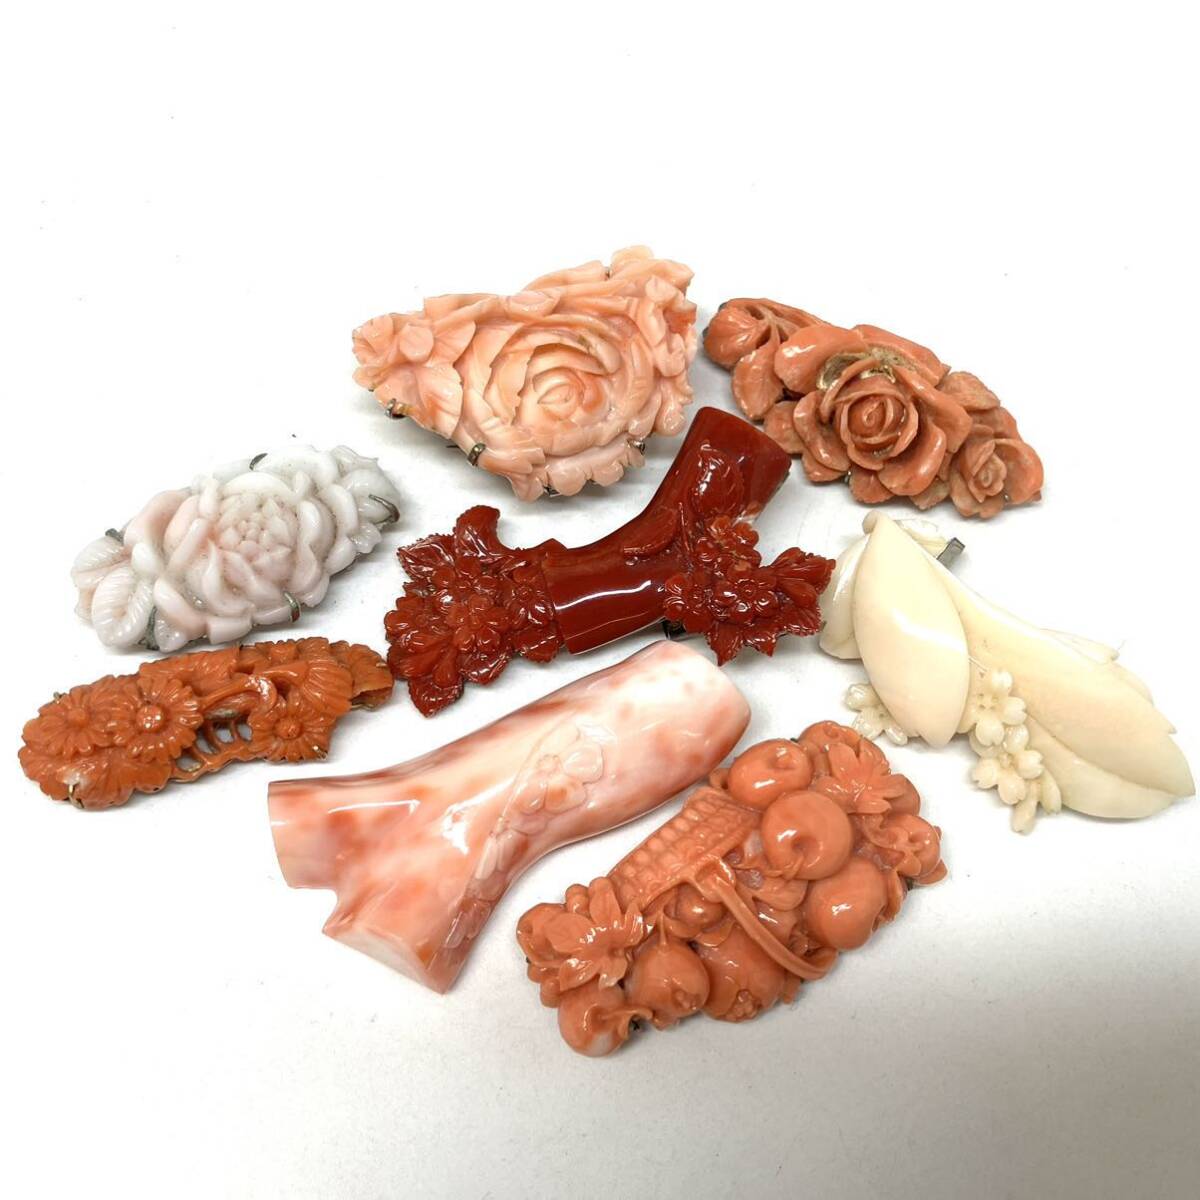 [.. obi .8 пункт . суммировать ]a масса примерно 125.5g.. коралл san . коралл coral скульптура красный . персик ветка obi . obi аксессуары для кимоно брошь broach серебряный CE0